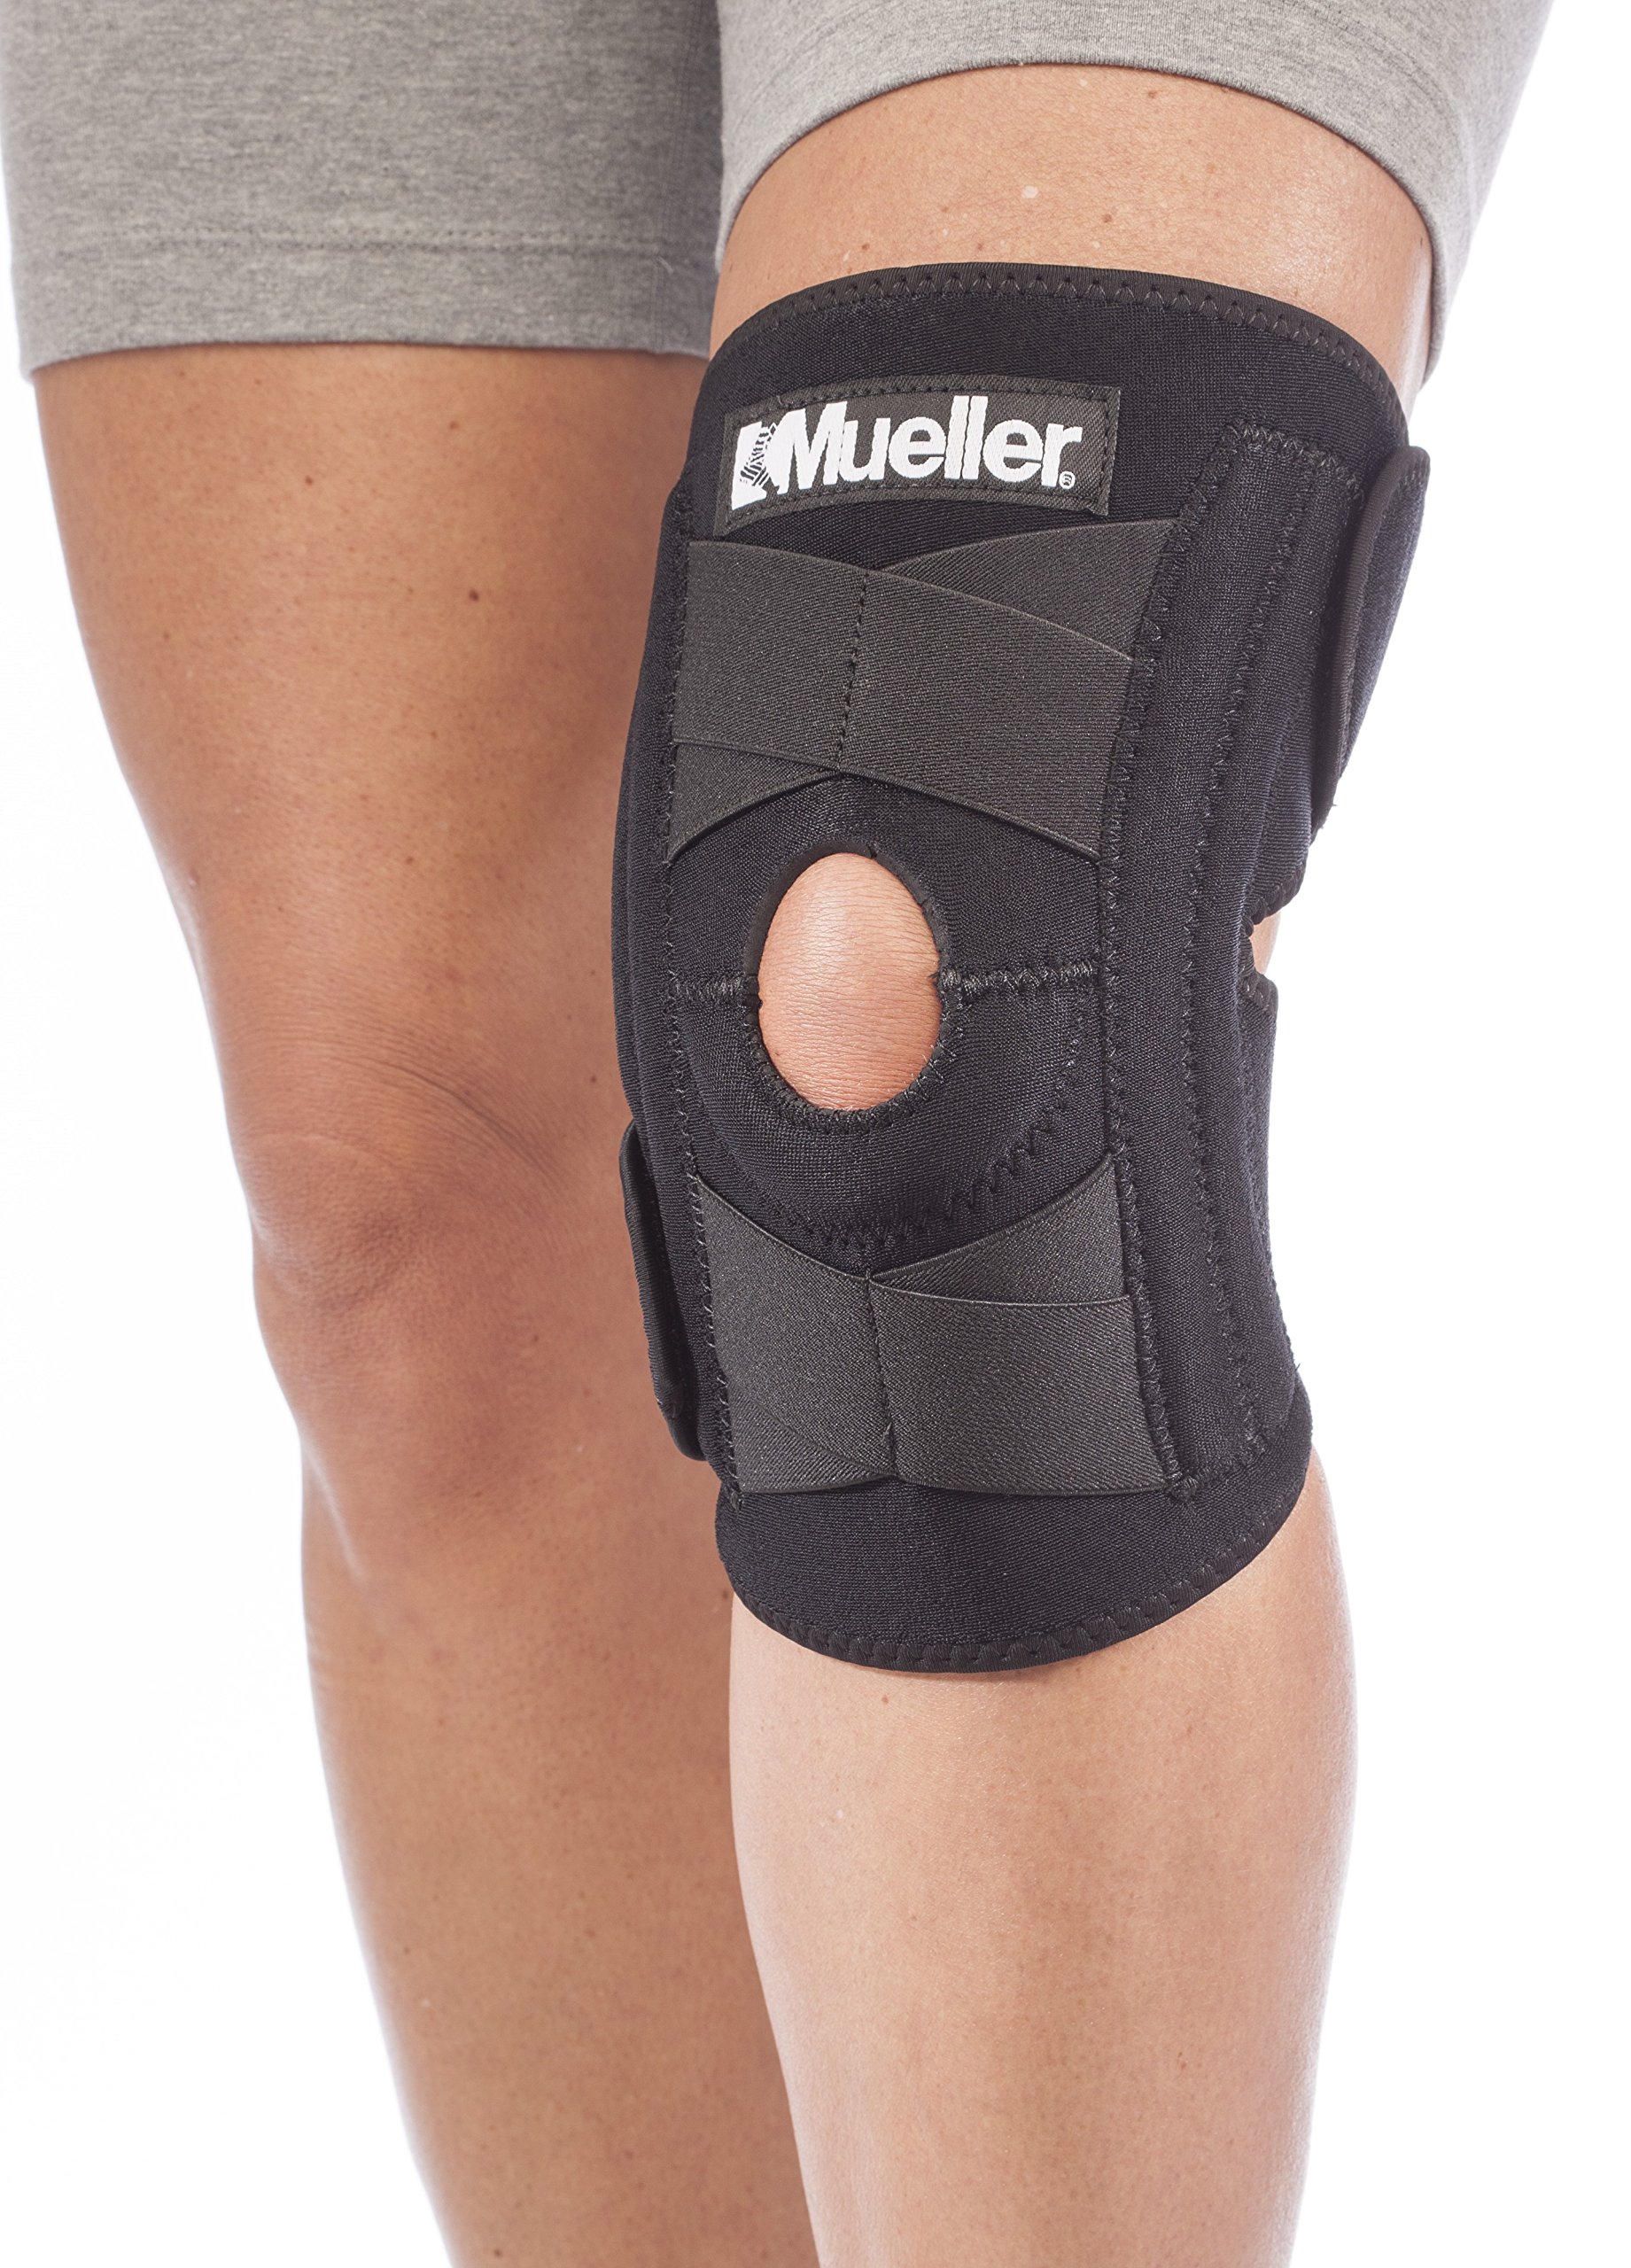 Mueller Sports Medicine Self-Adjusting Knee Stabilizer, For Men and Women,  Black, One Size (Pack of 1)